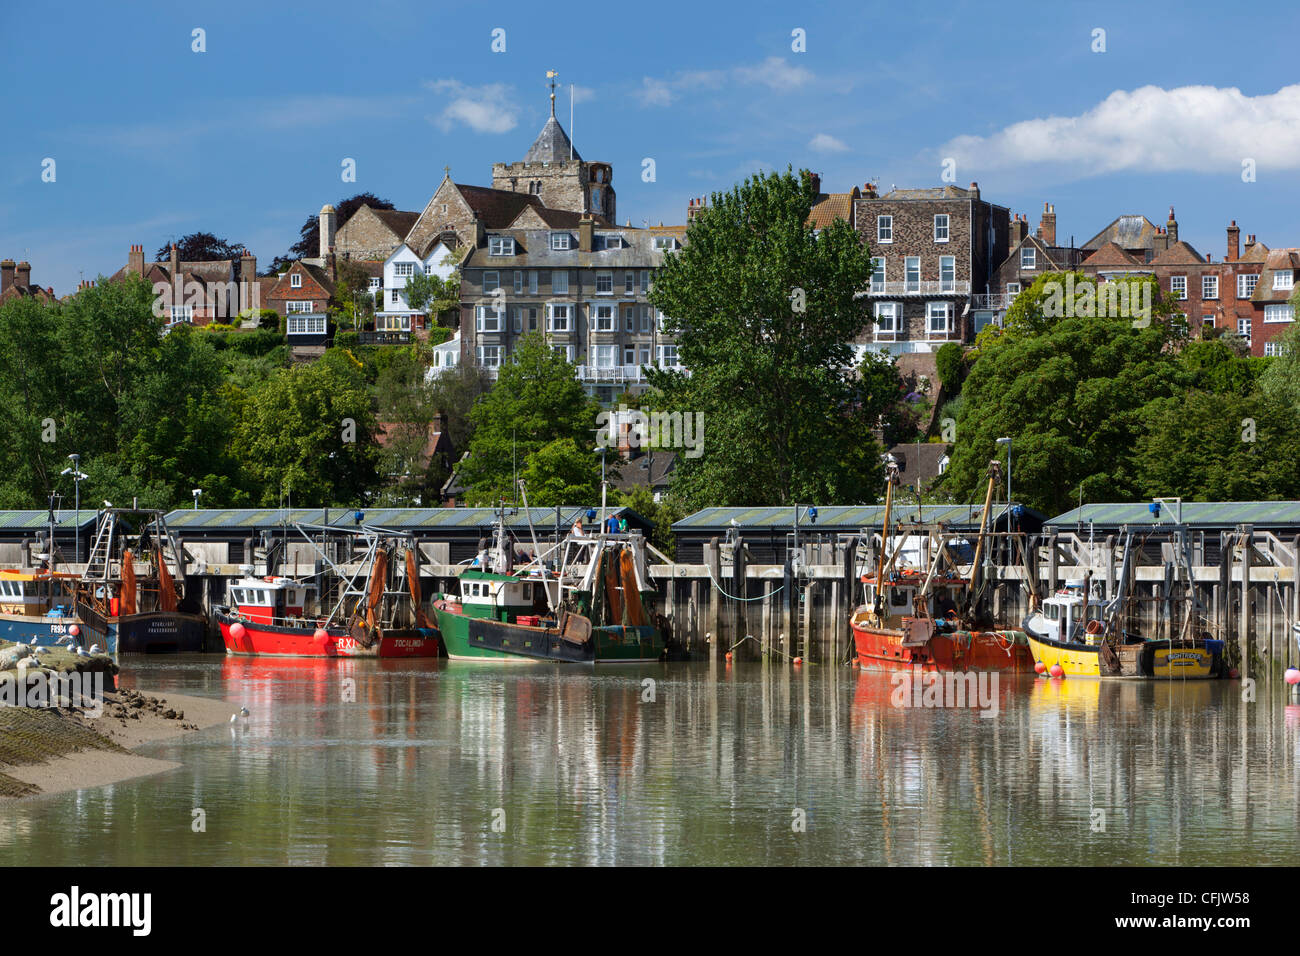 Angeln am Fluss Rother, Altstadt, Hafen Roggen, East Sussex, England, Vereinigtes Königreich, Europa Stockfoto